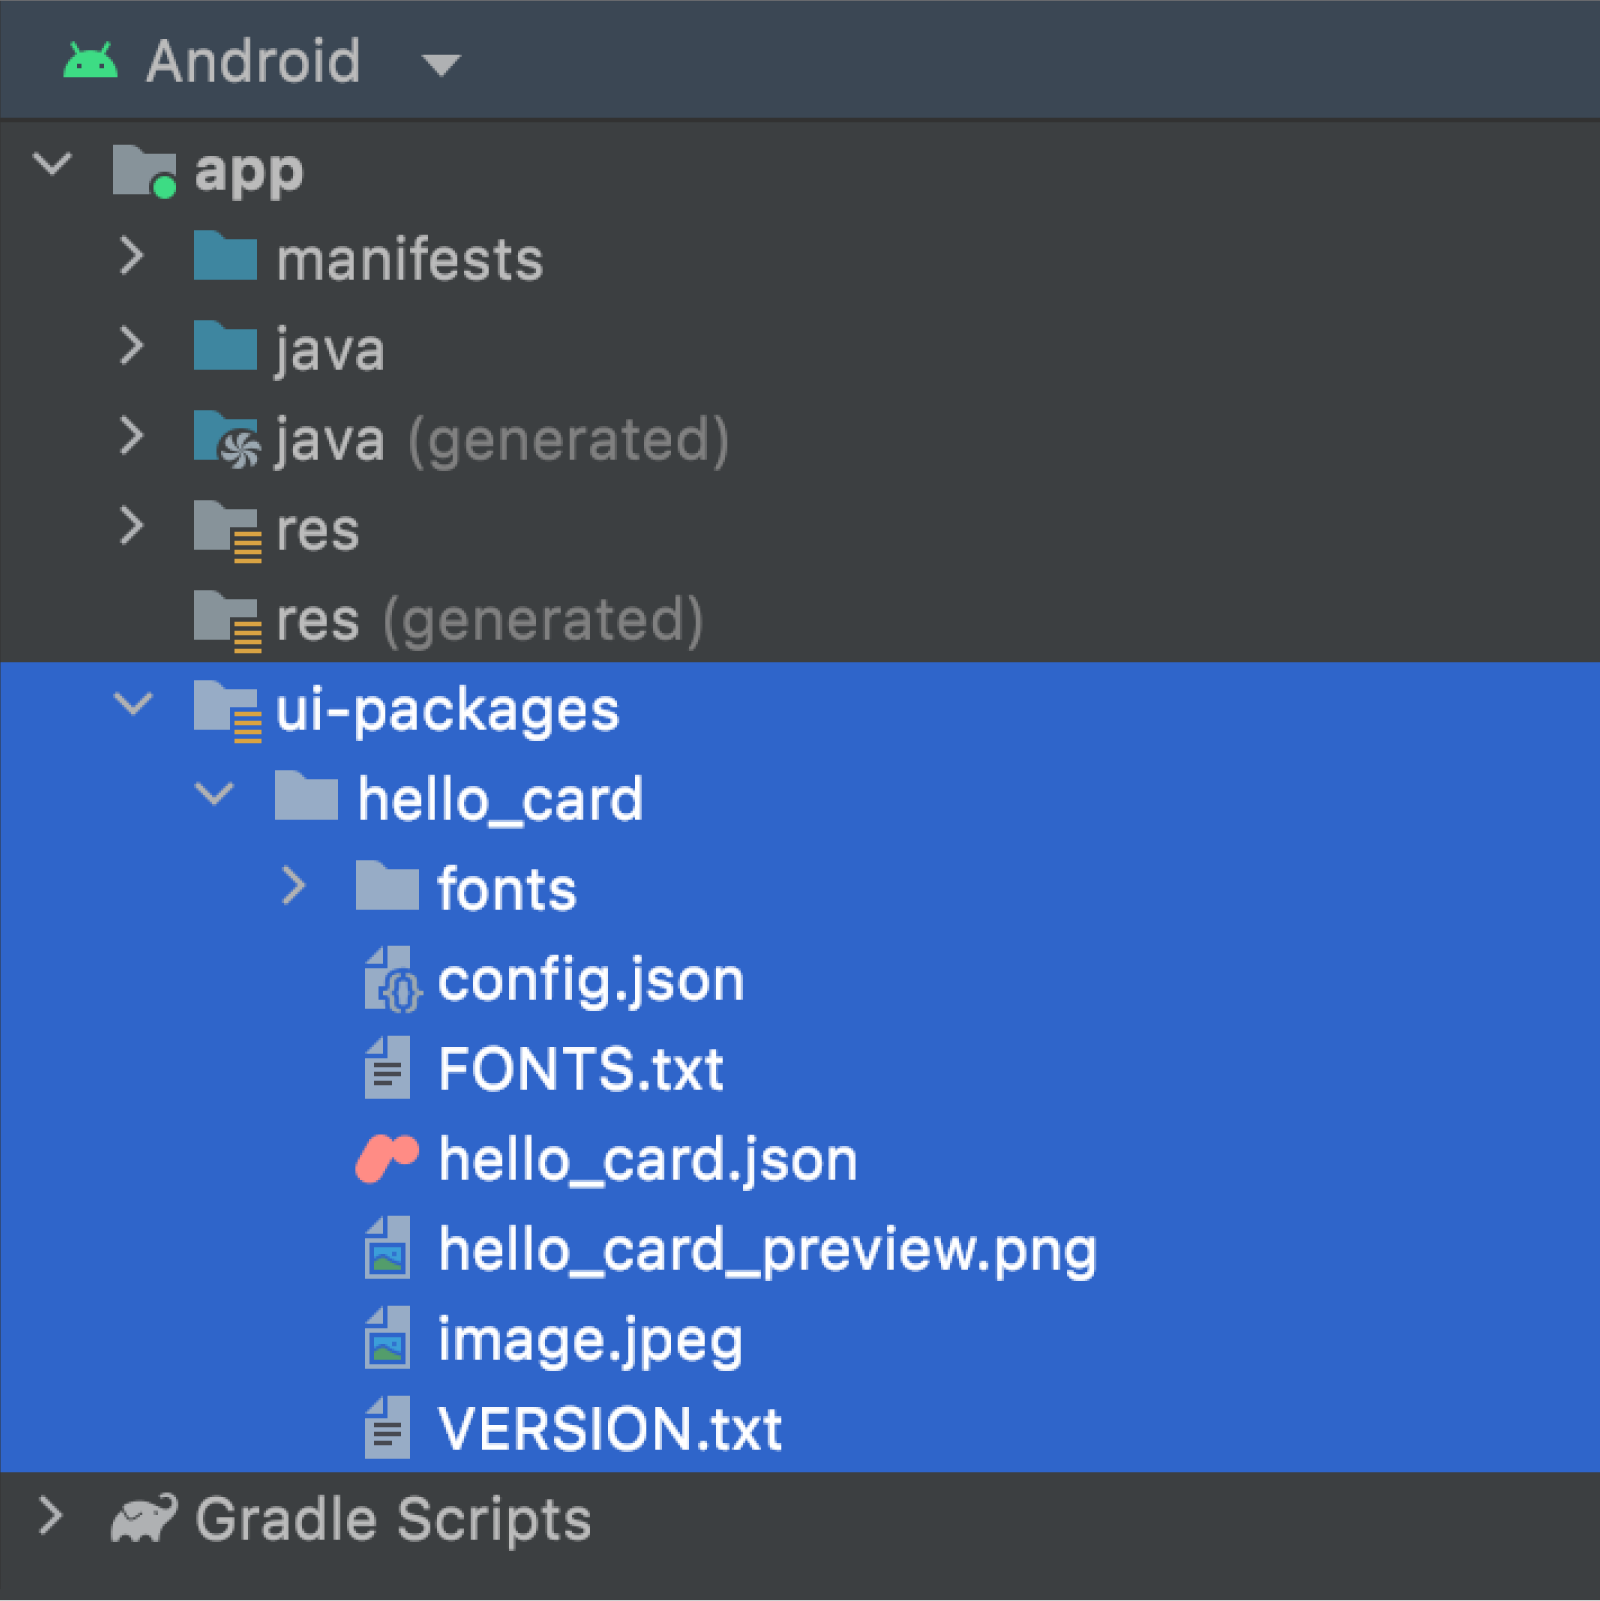 Folder pakietów UI w widoku Androida